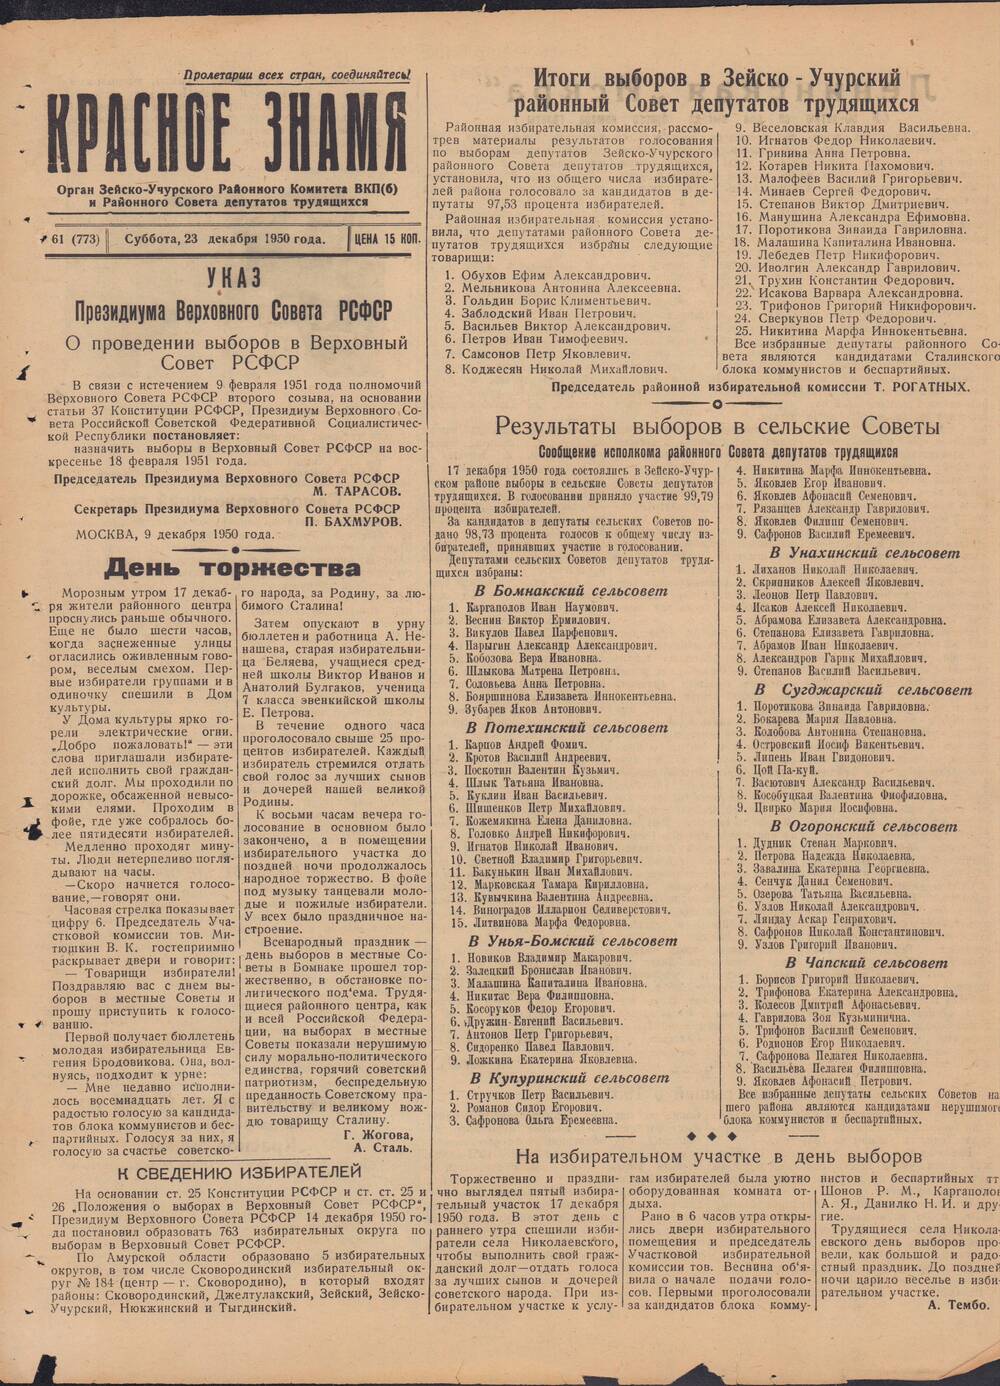 Газета Красное знамя №61 (773) от 23 декабря 1950 года.